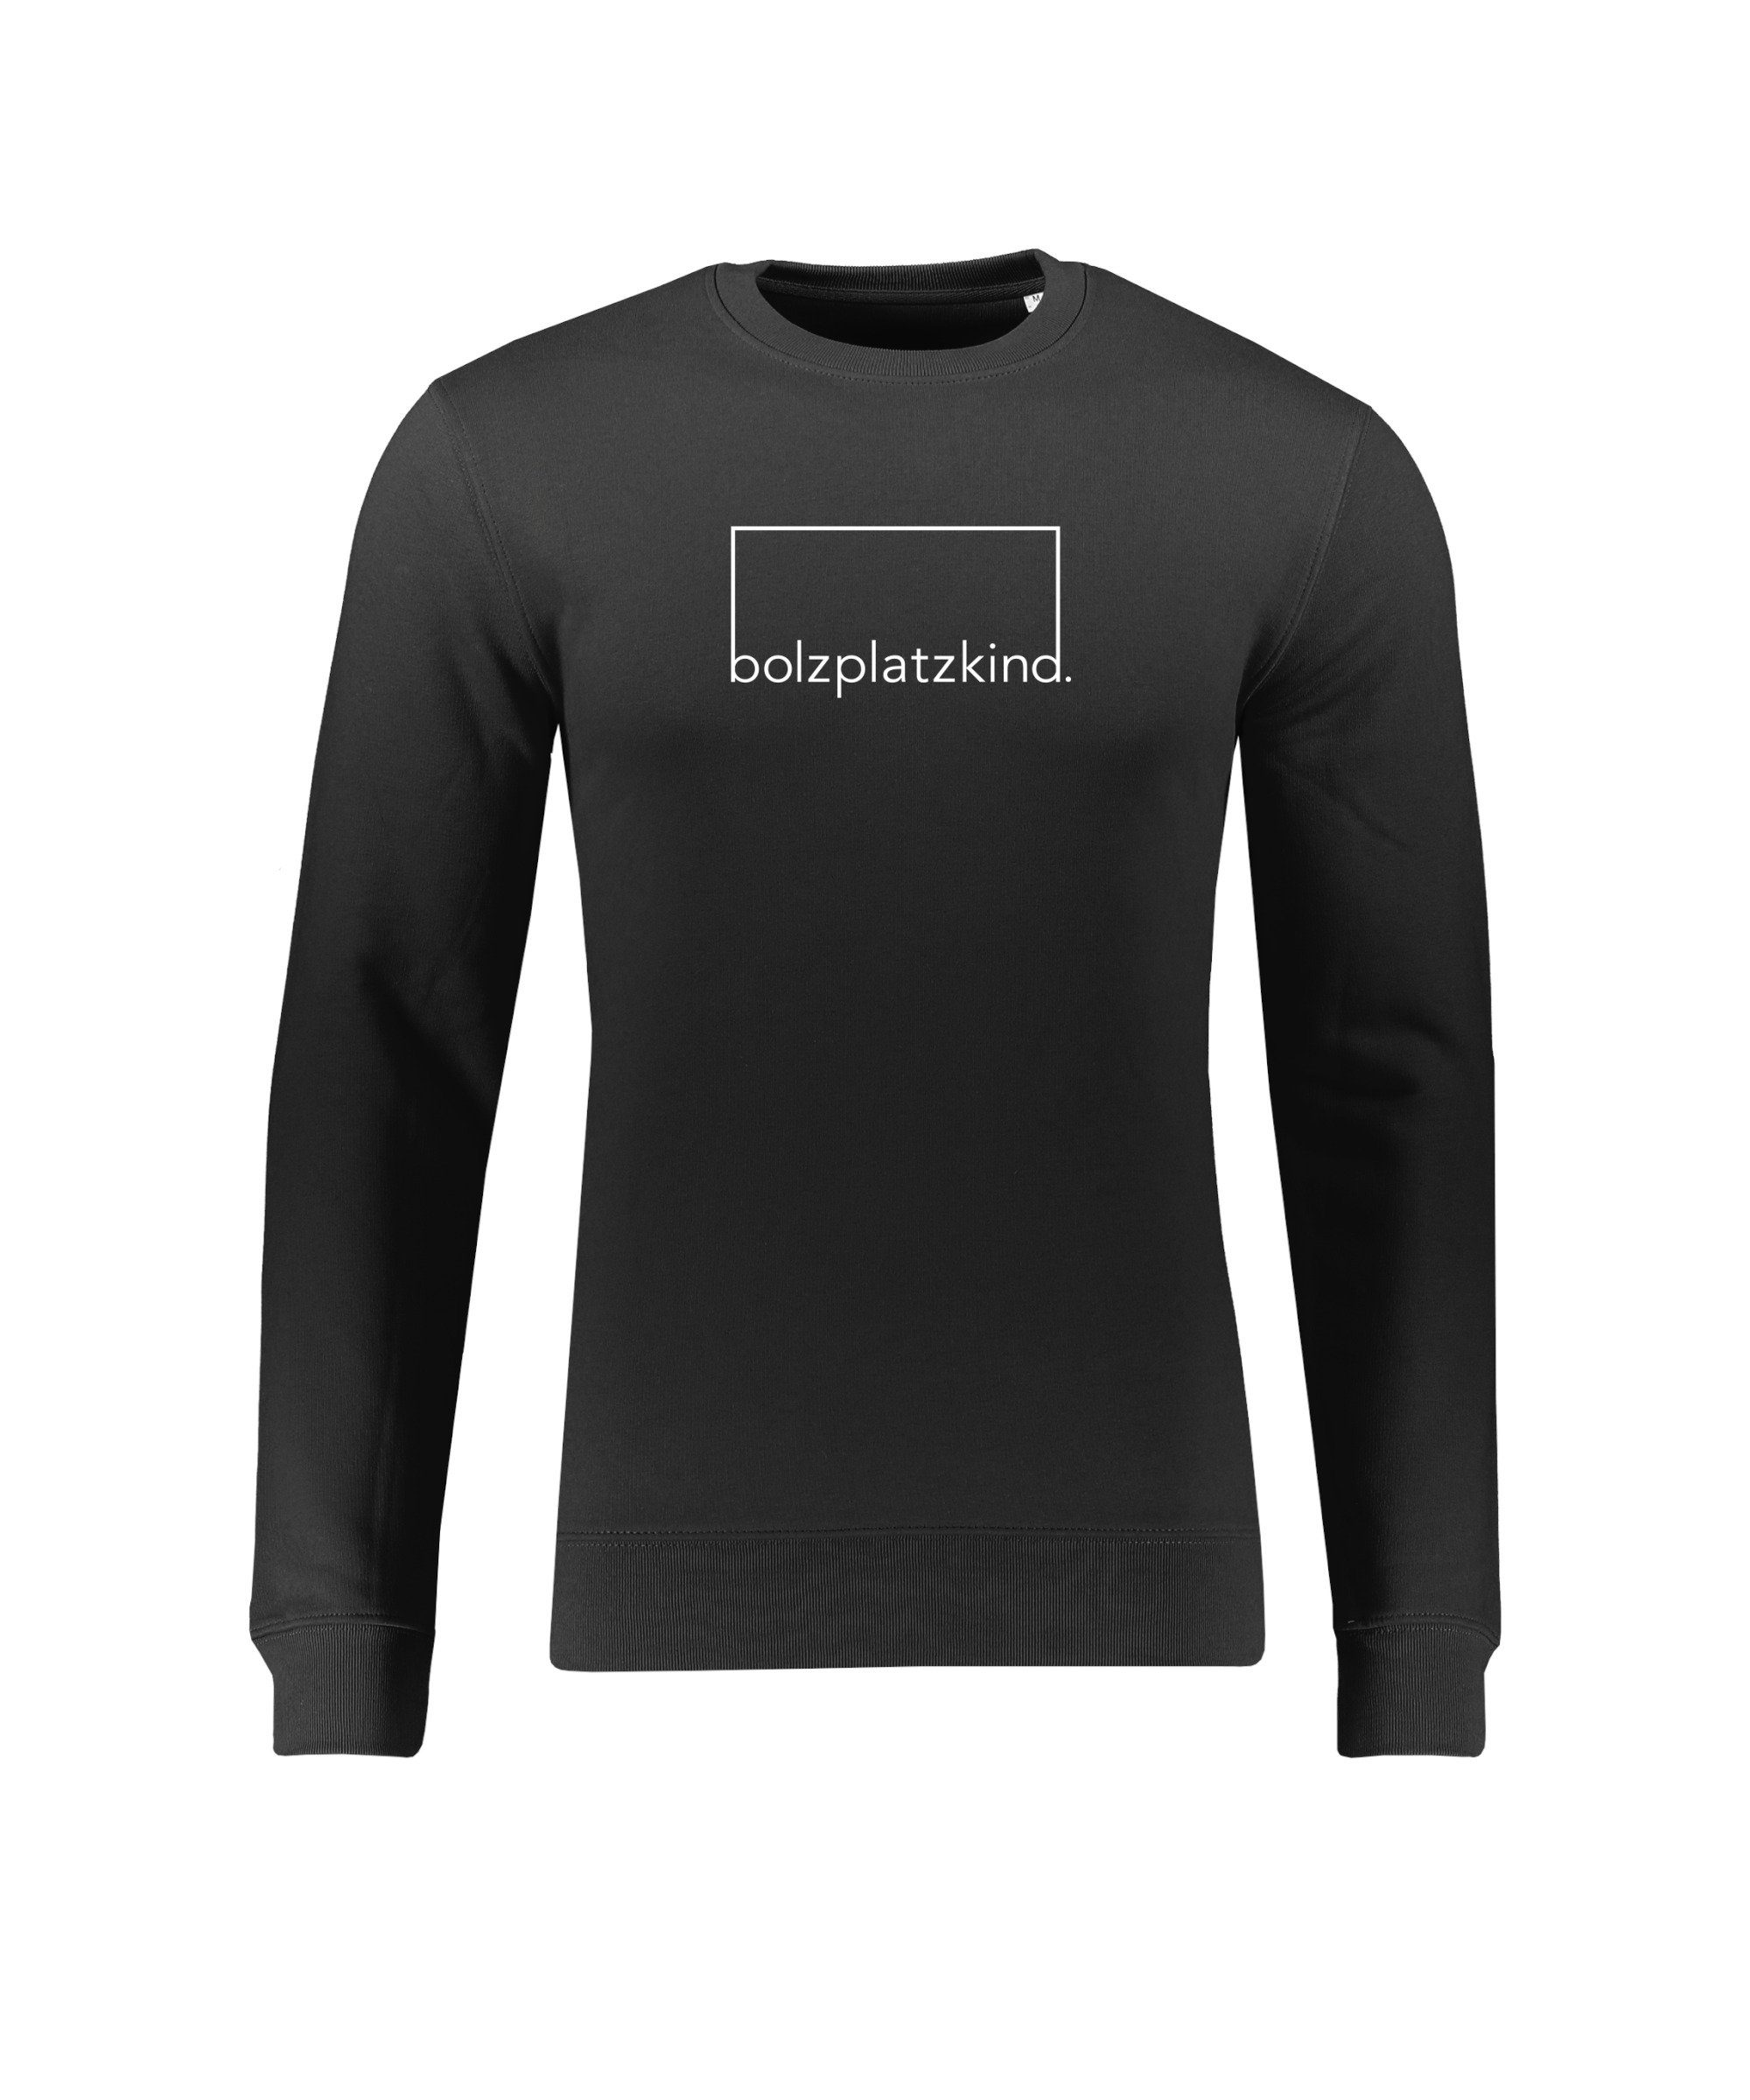 Sweatshirt "Mut" schwarzweiss Bolzplatzkind Sweatshirt